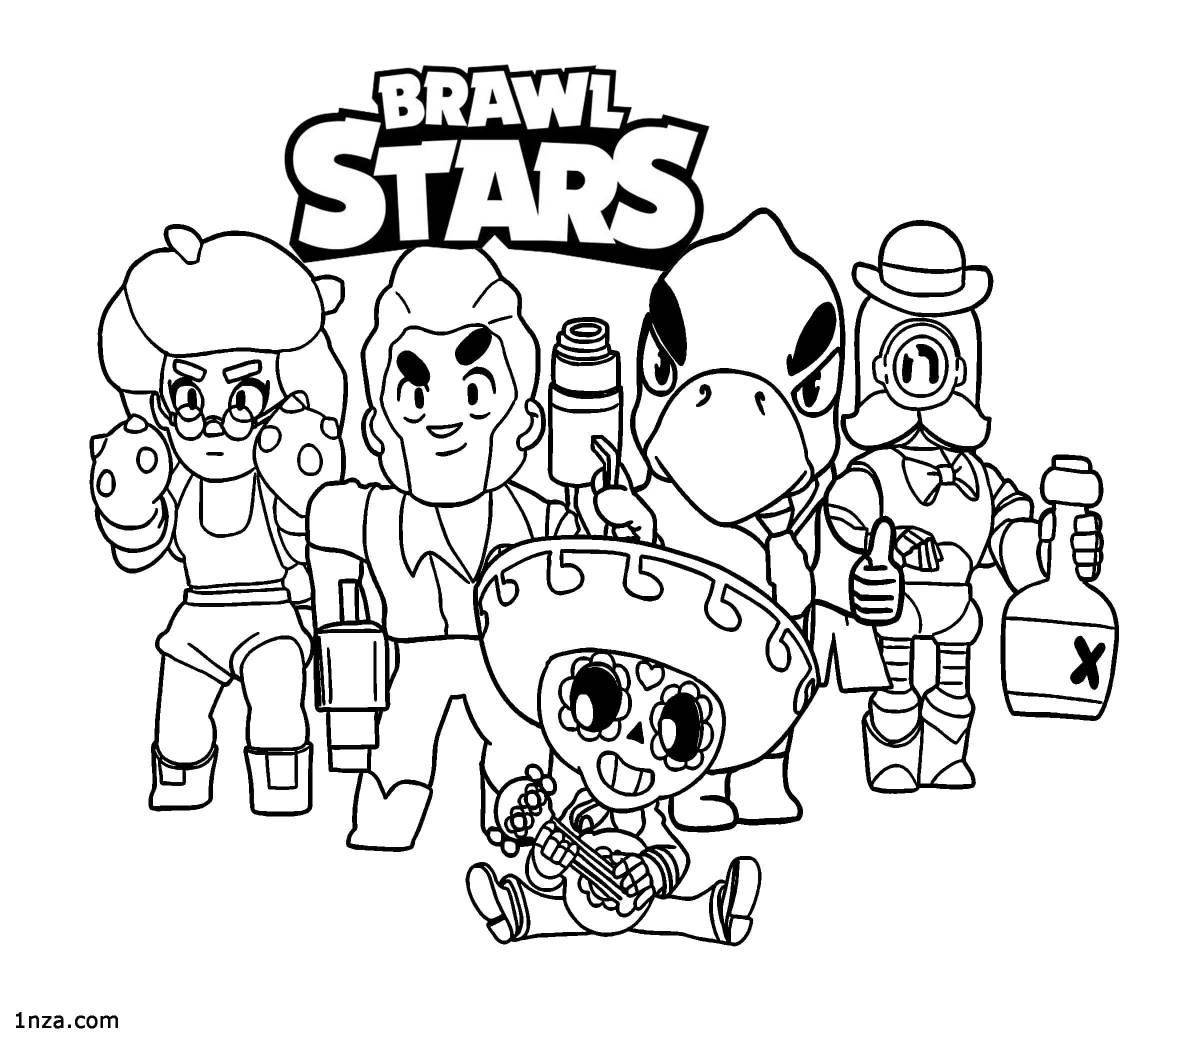 Cute coloring mega box bravo stars